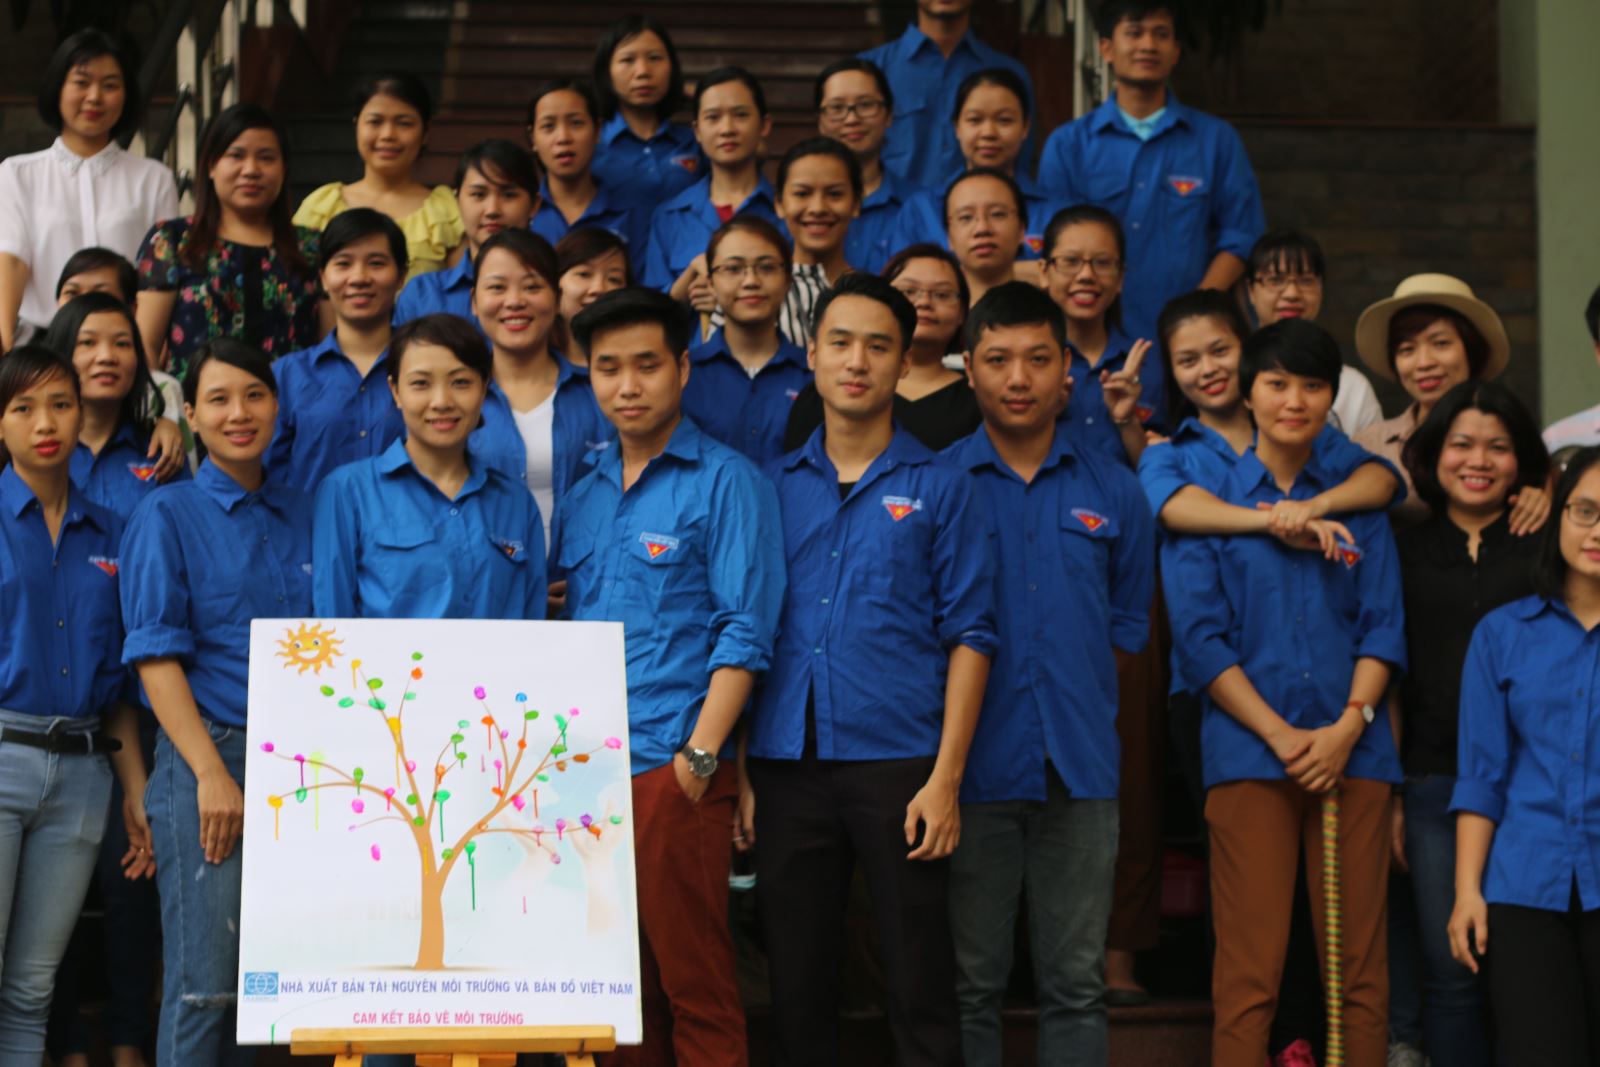 Nhà xuất bản Tài nguyên - Môi trường và Bản đồ Việt Nam tham gia chiến dịch làm cho thế giới sạch hơn năm 2016